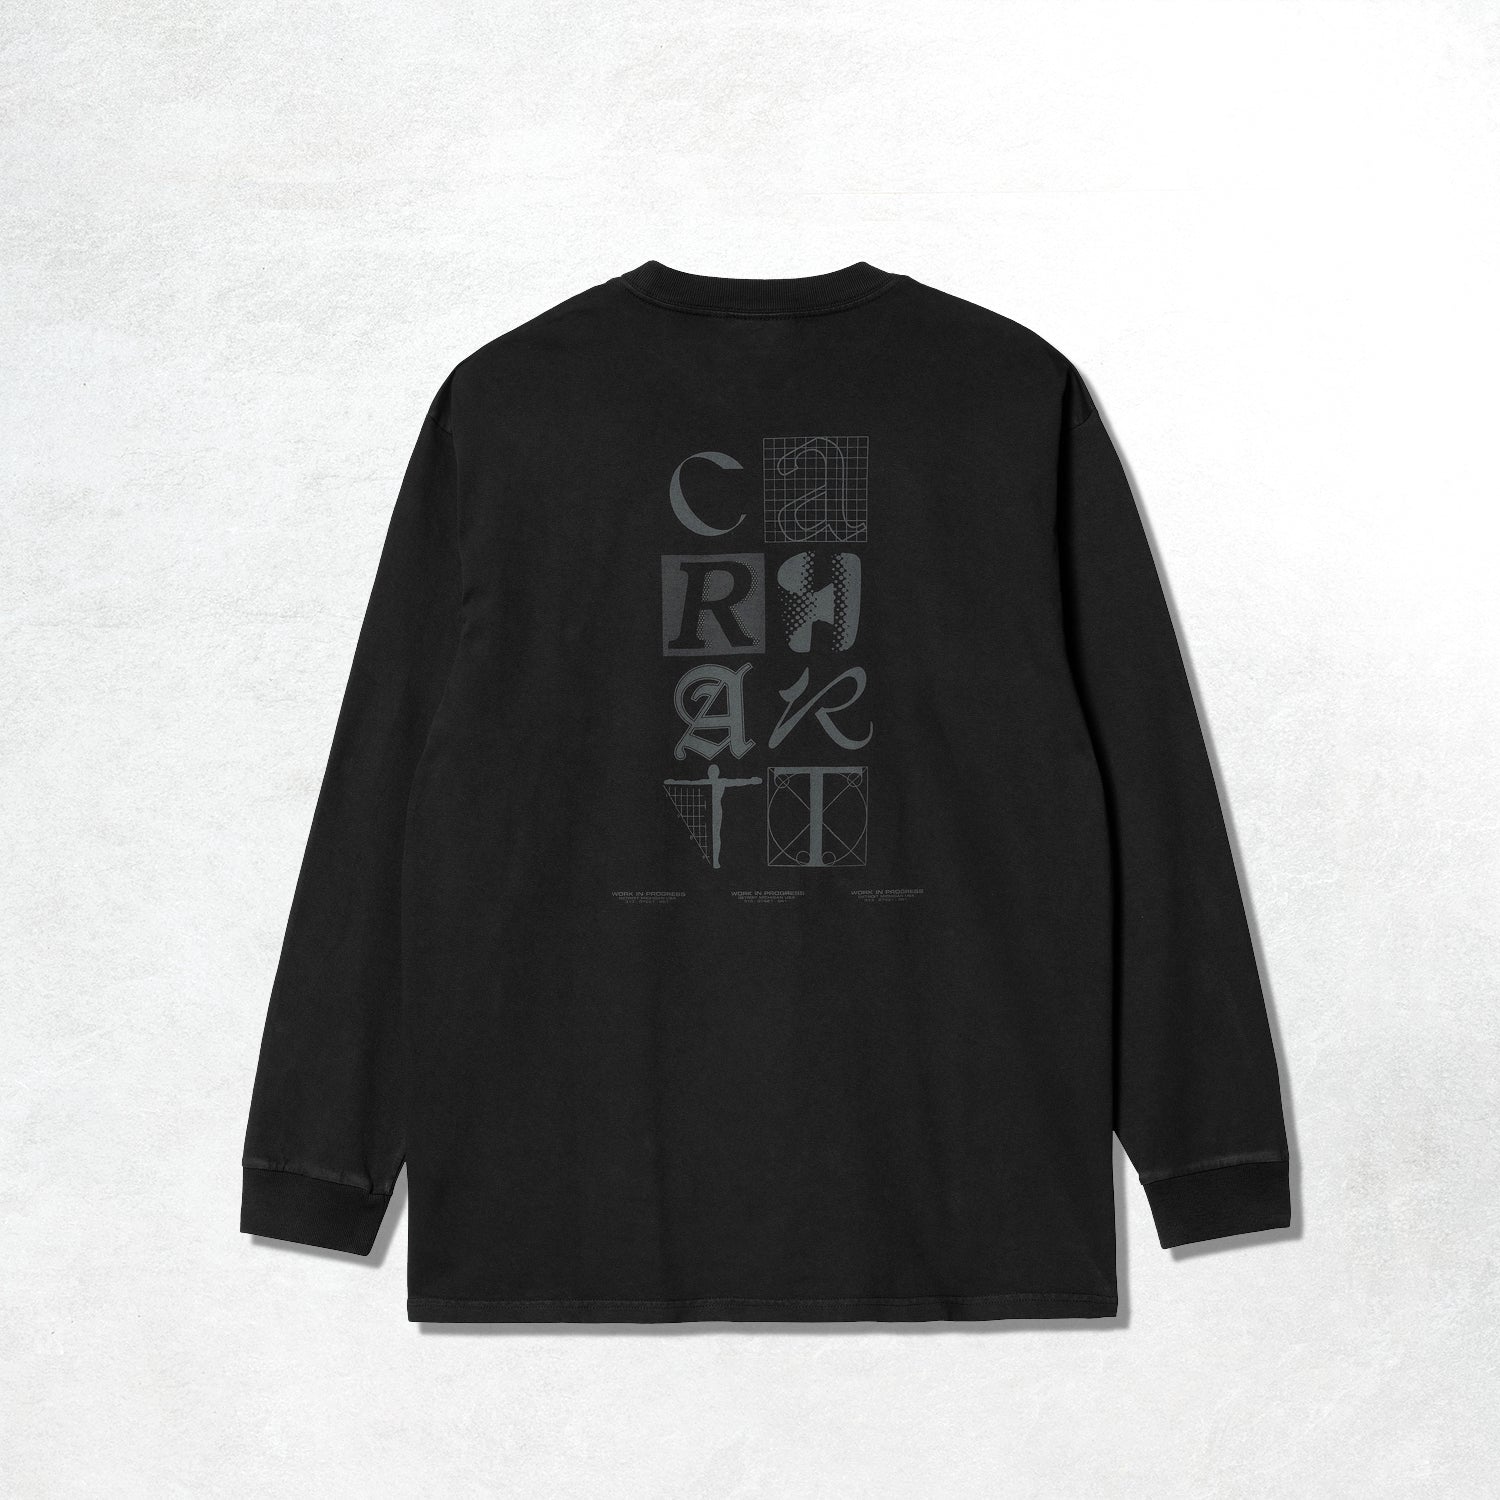 Carhartt WIP L/S Ratios T-Shirt: Black / Eucalyptus (Back)